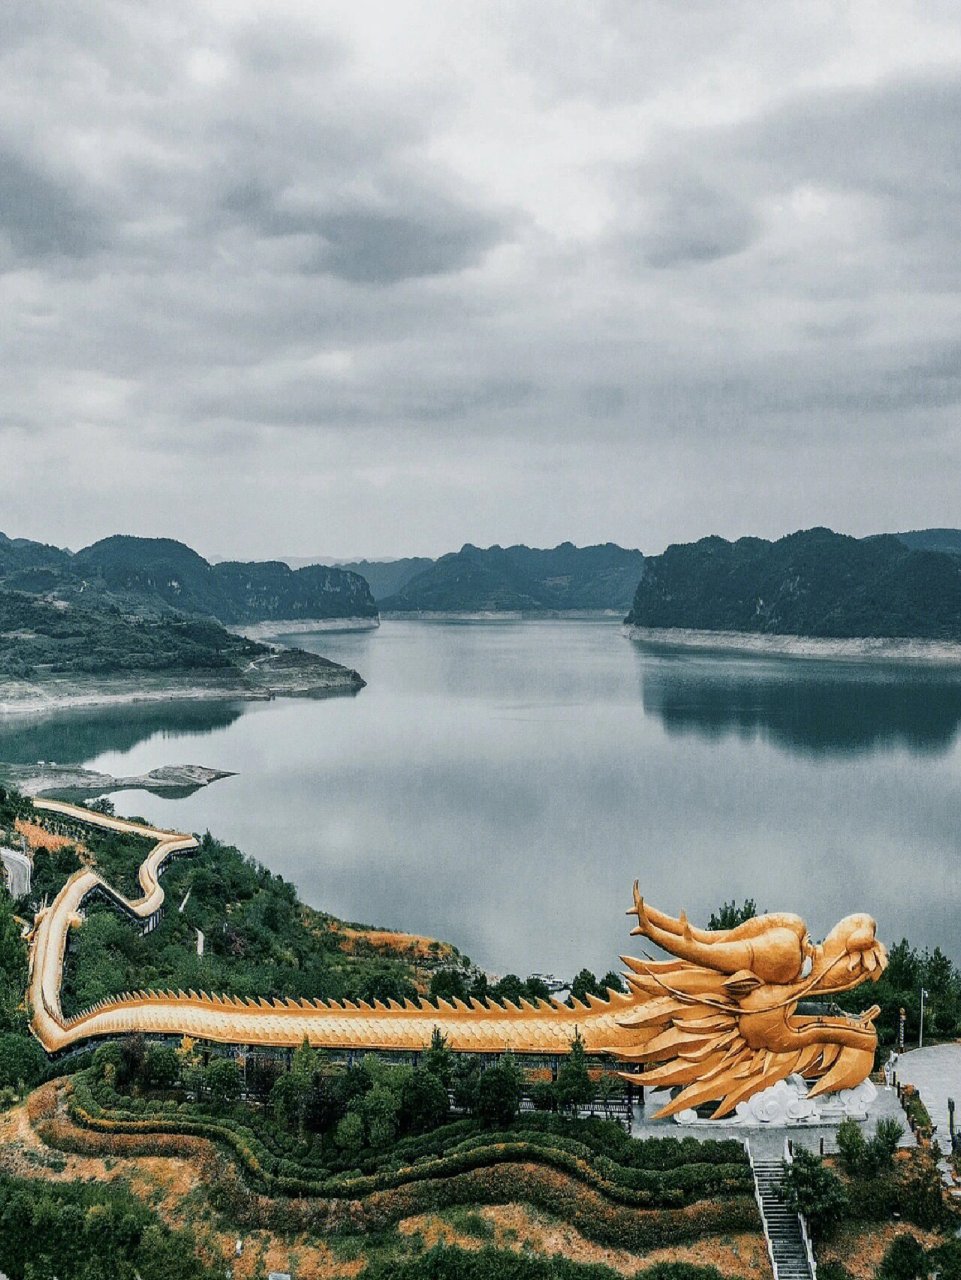 余庆飞龙湖景区图片图片